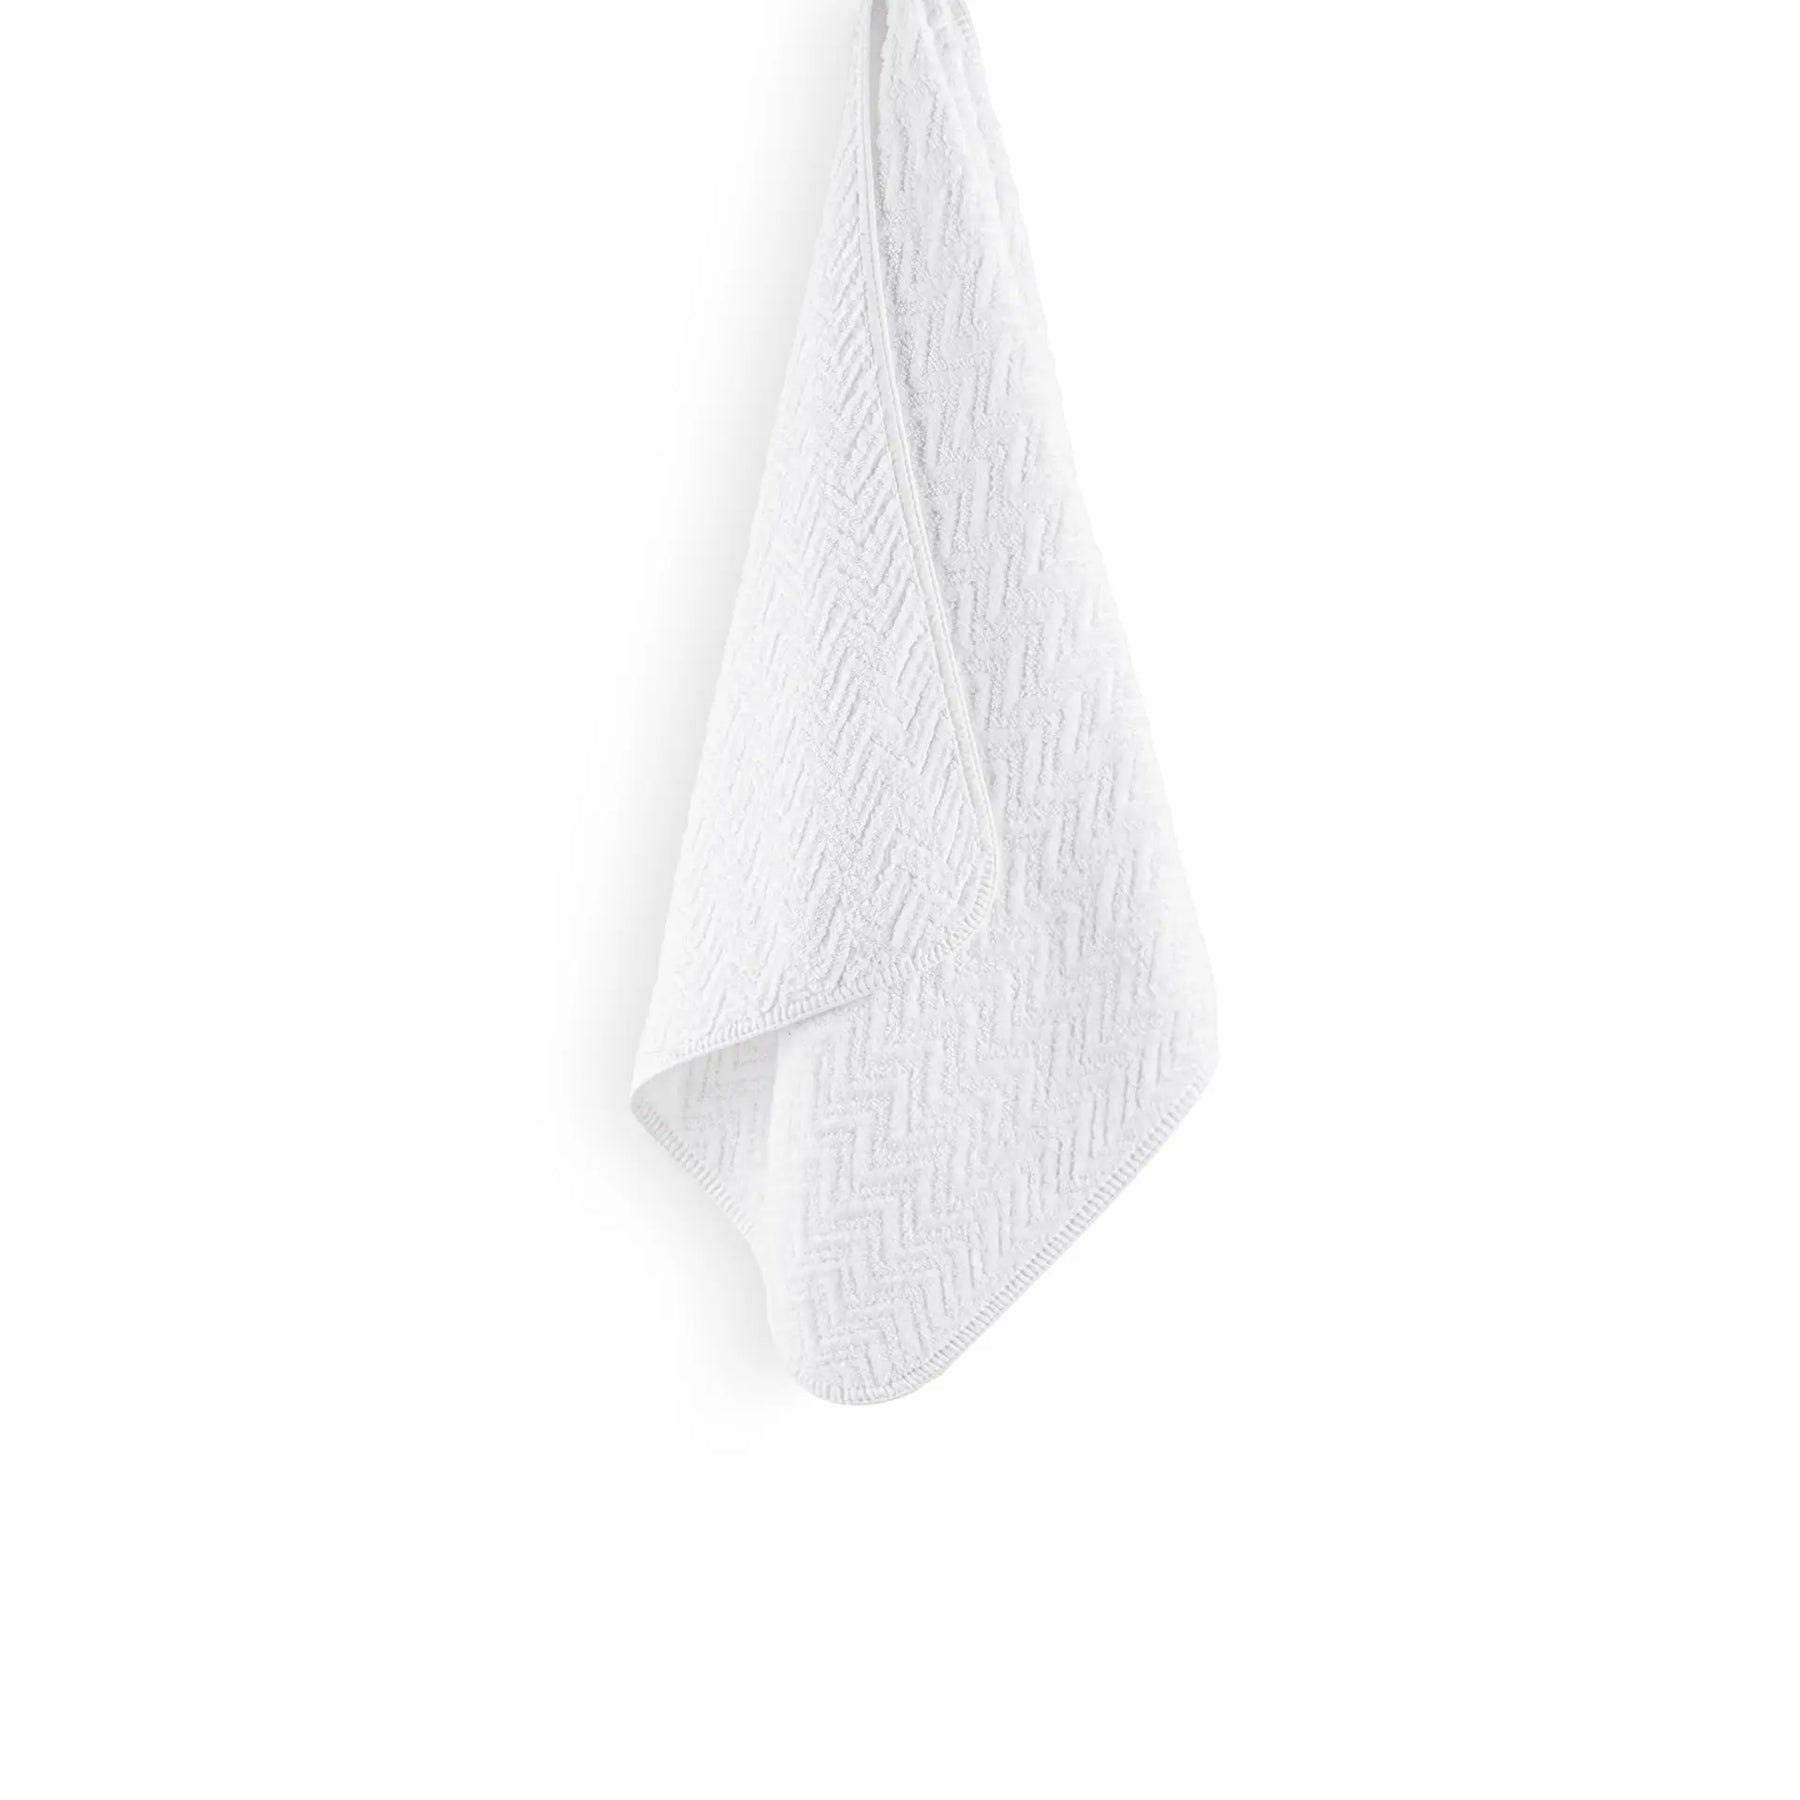 Graccioza Hamilton Bath Towel in White